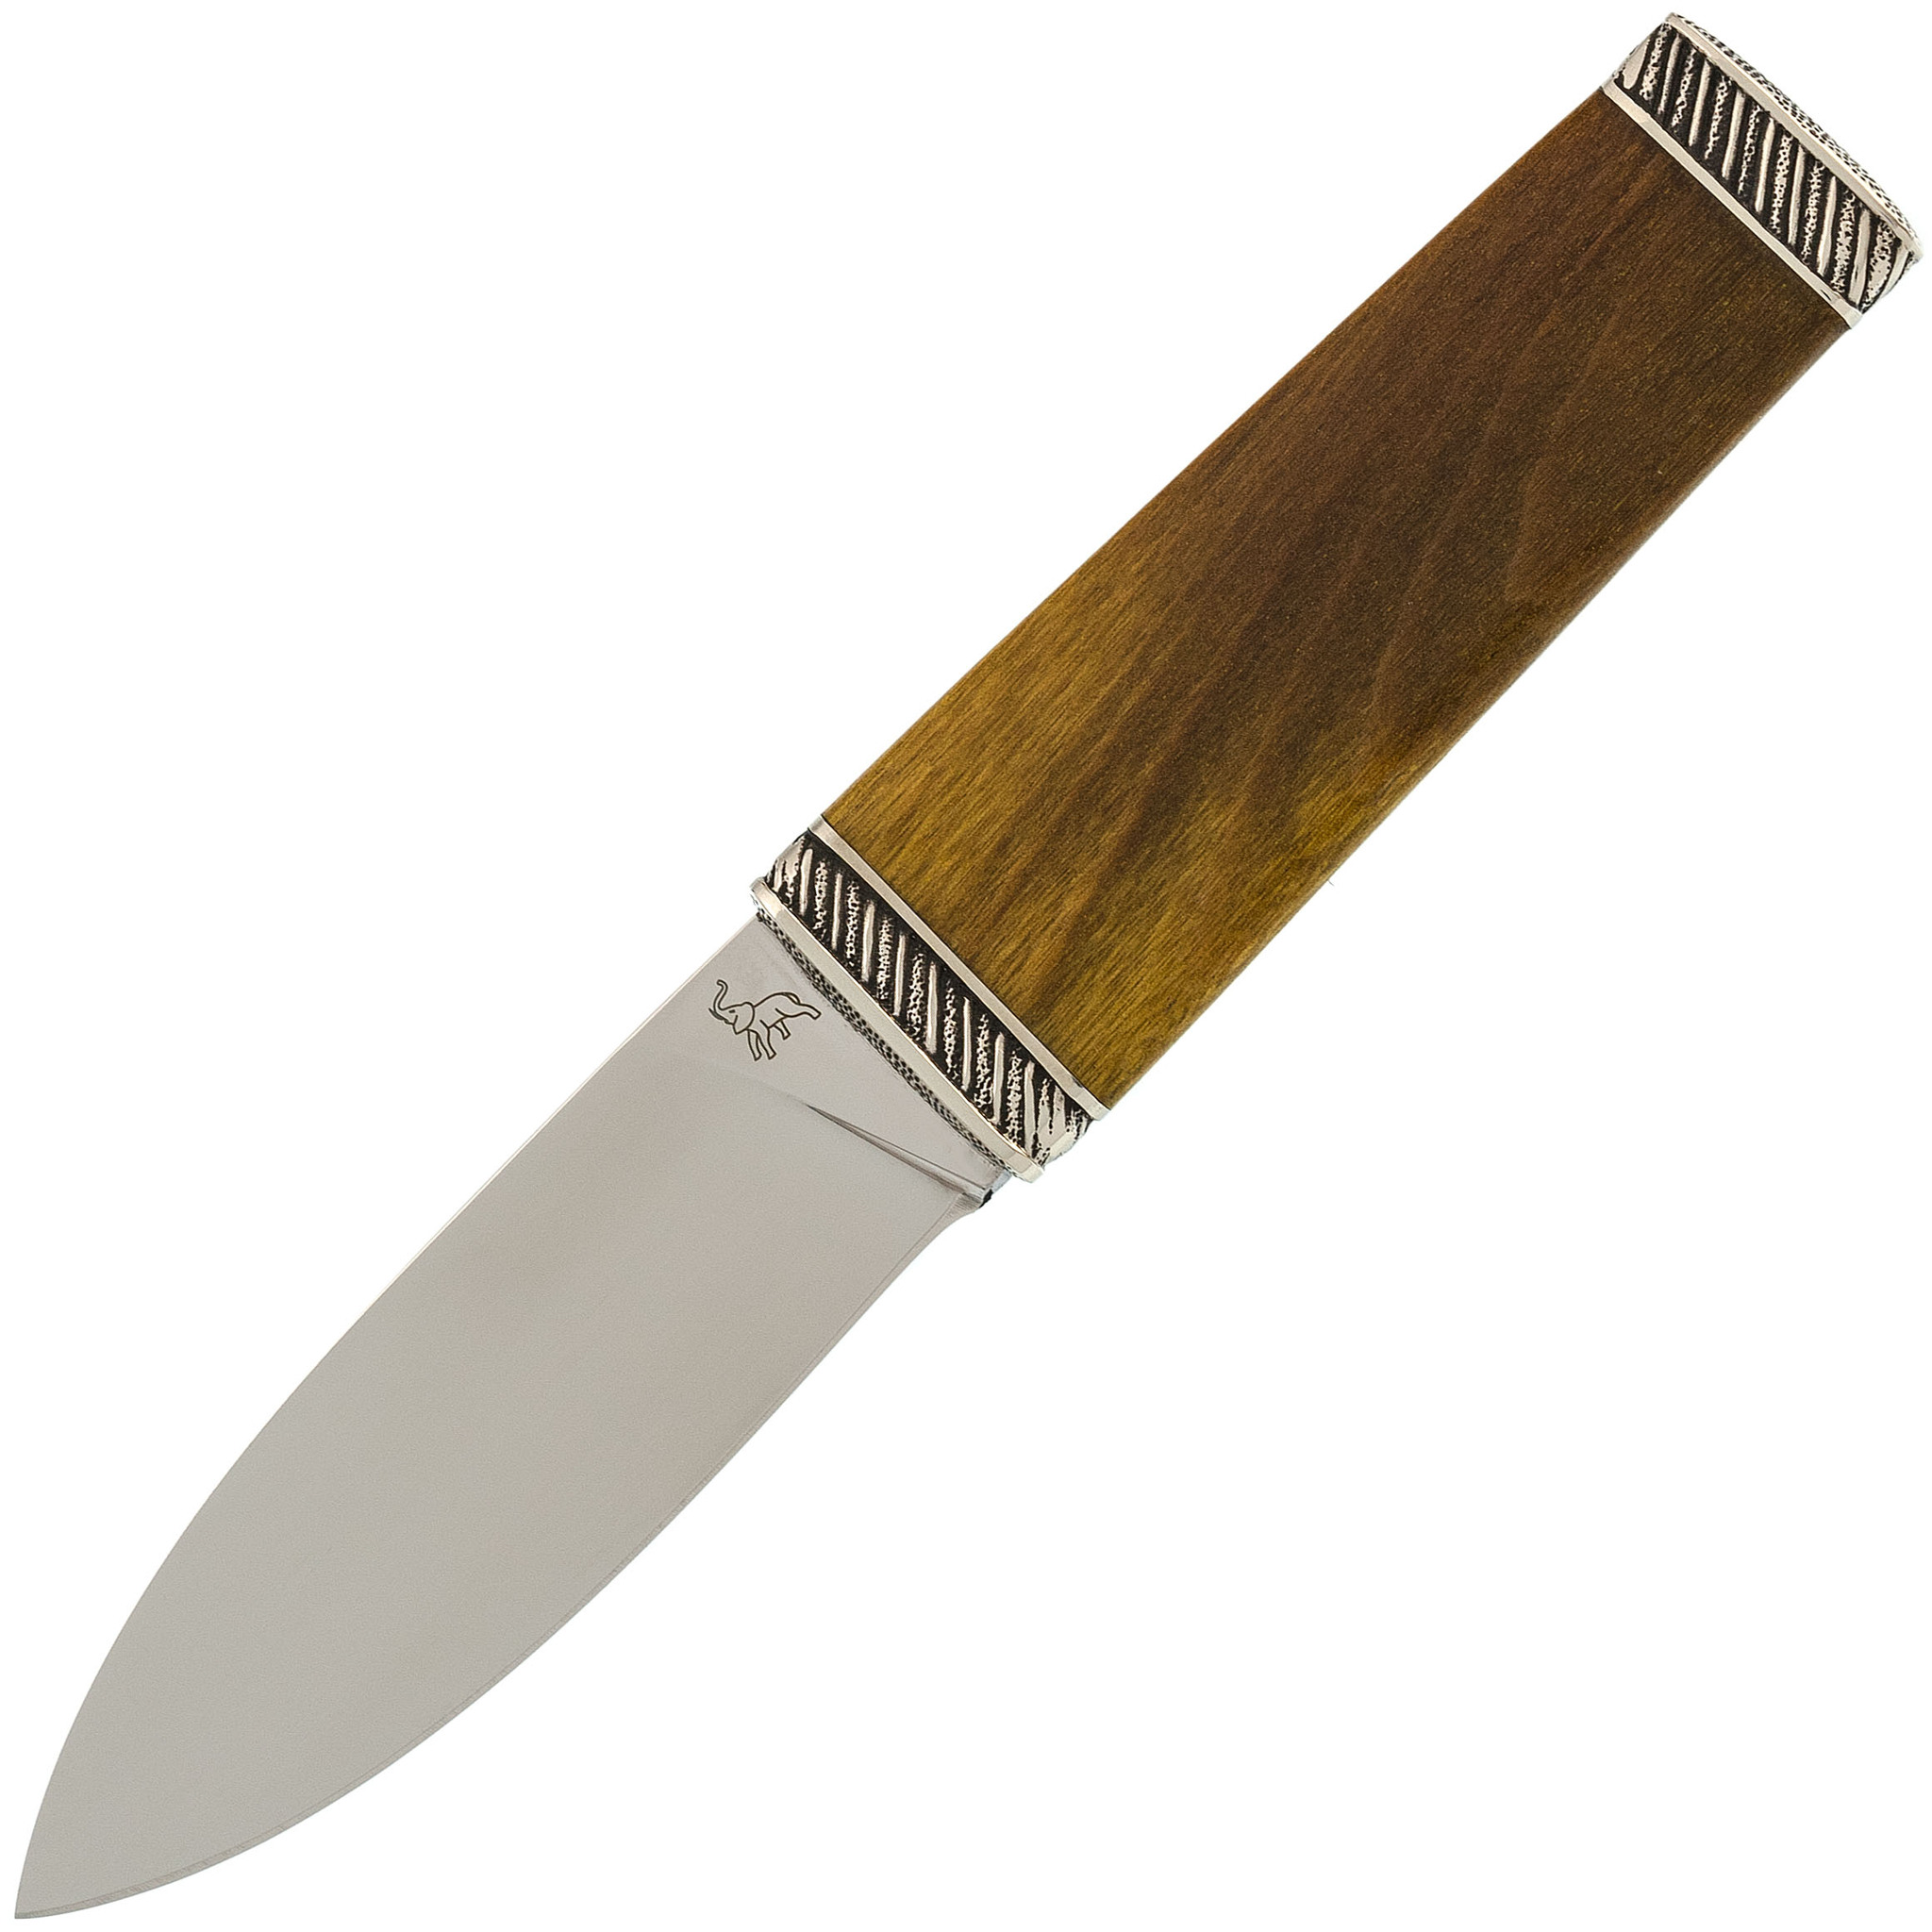 Туристический нож Скин-ду, сталь 95Х18, рукоять тополь